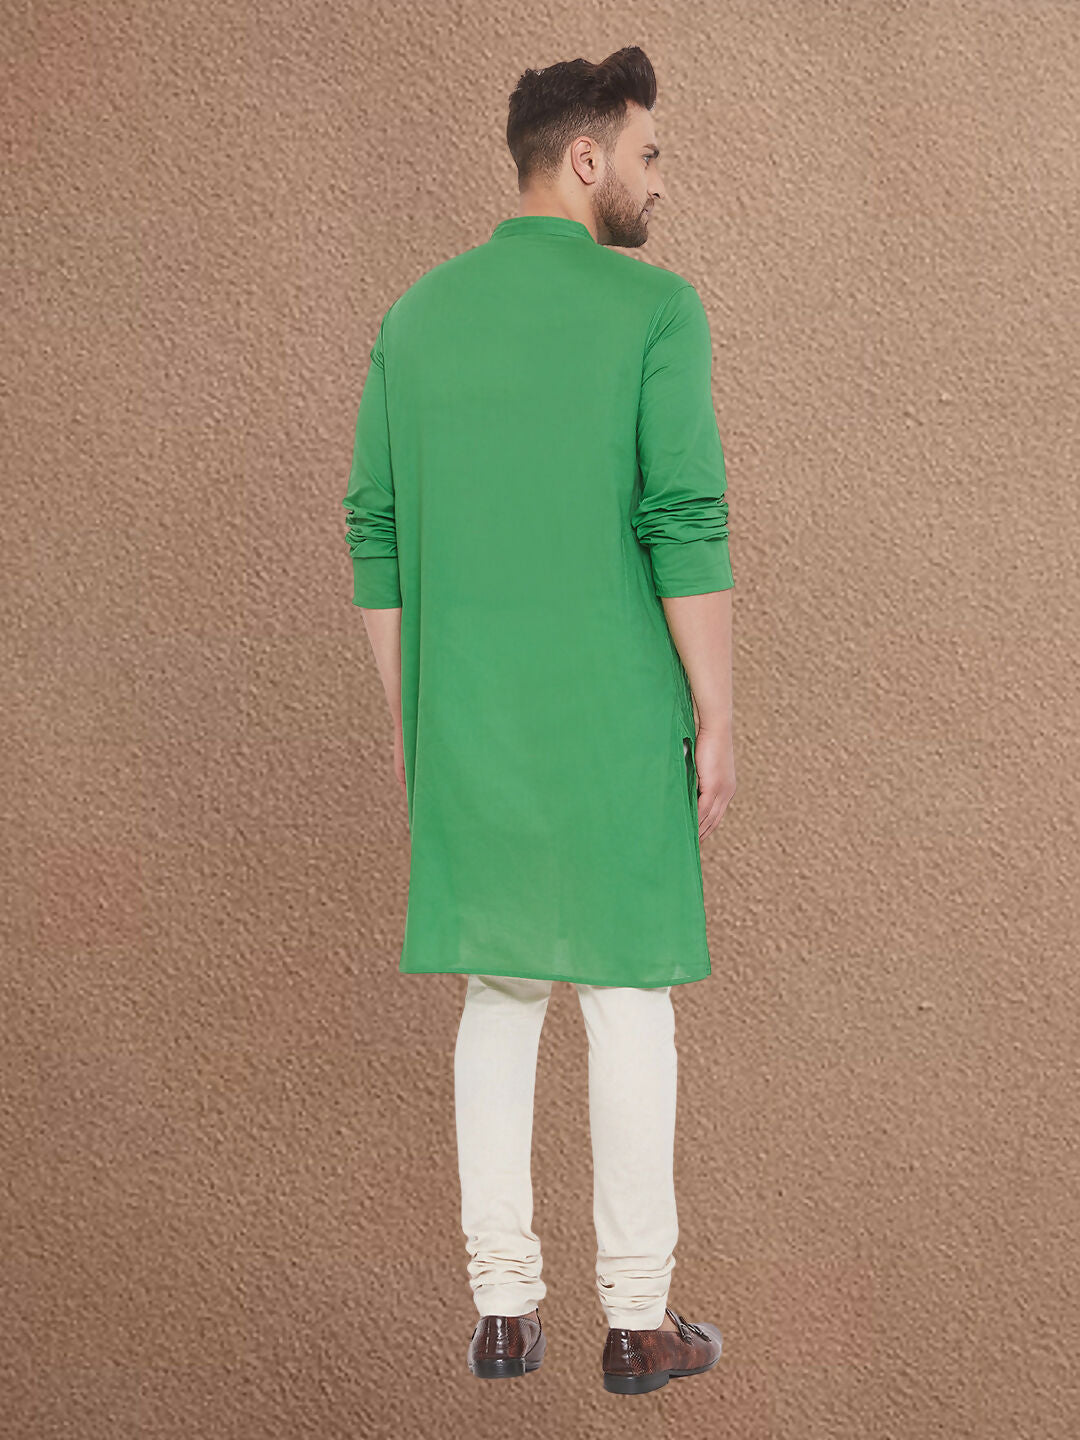 Even Apparels Men's Pintuck Fancy Green Kurta - Distacart